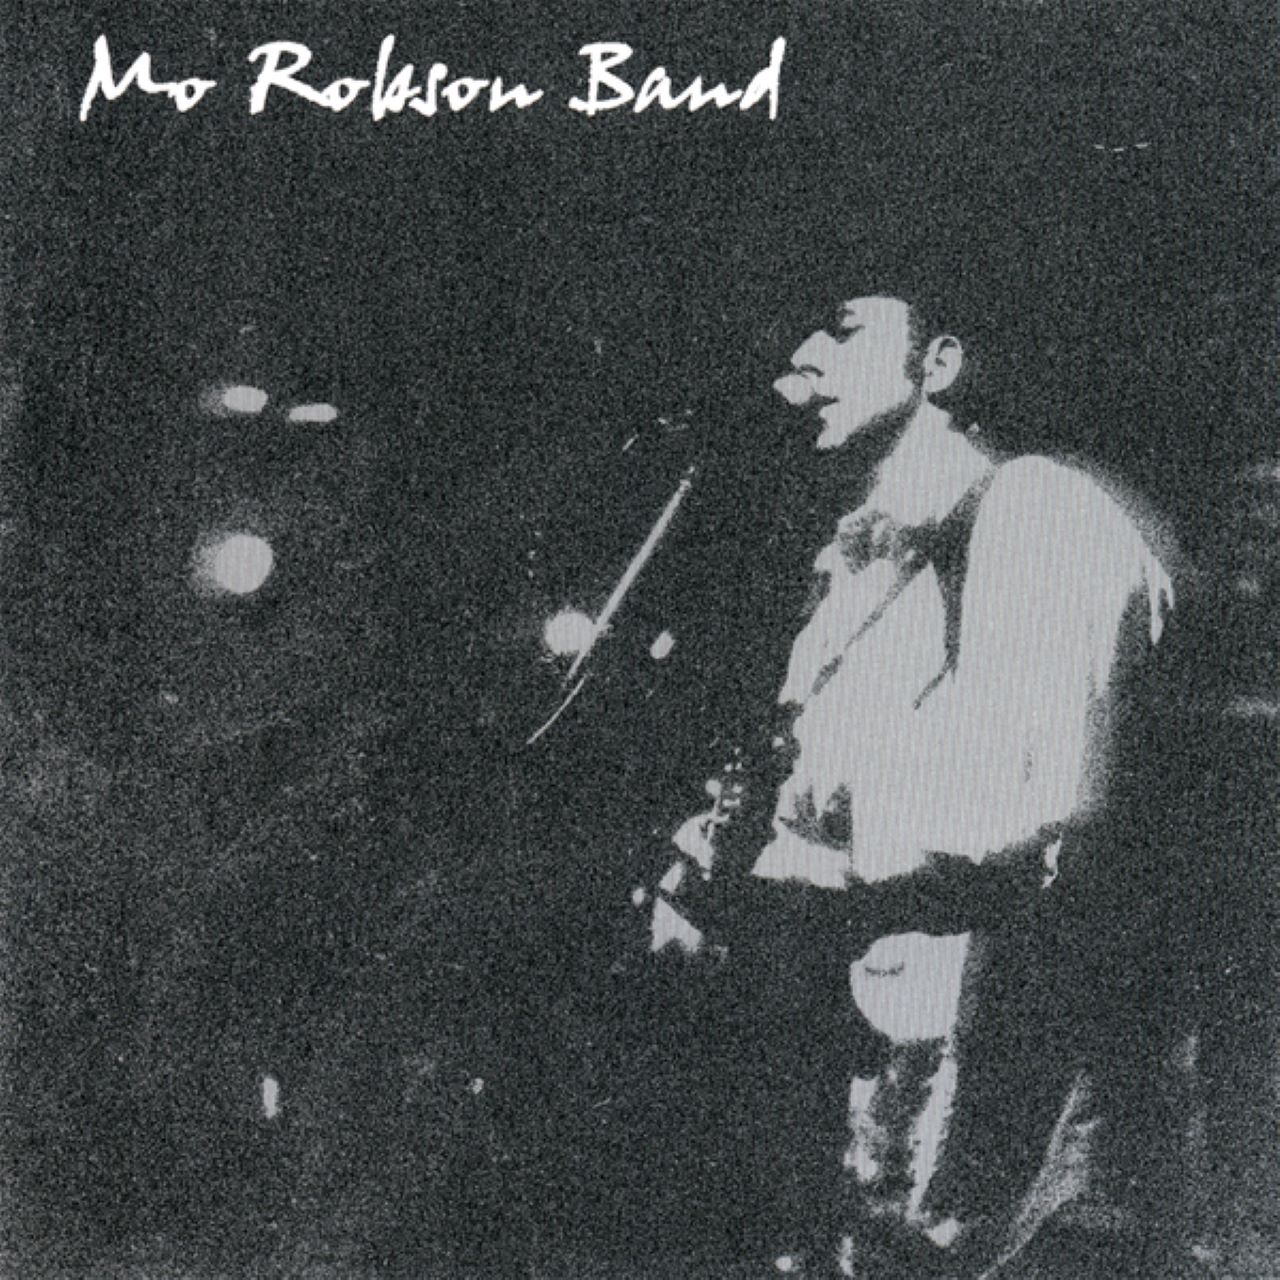 Mo Robson Band - Mo Robson Band cover album